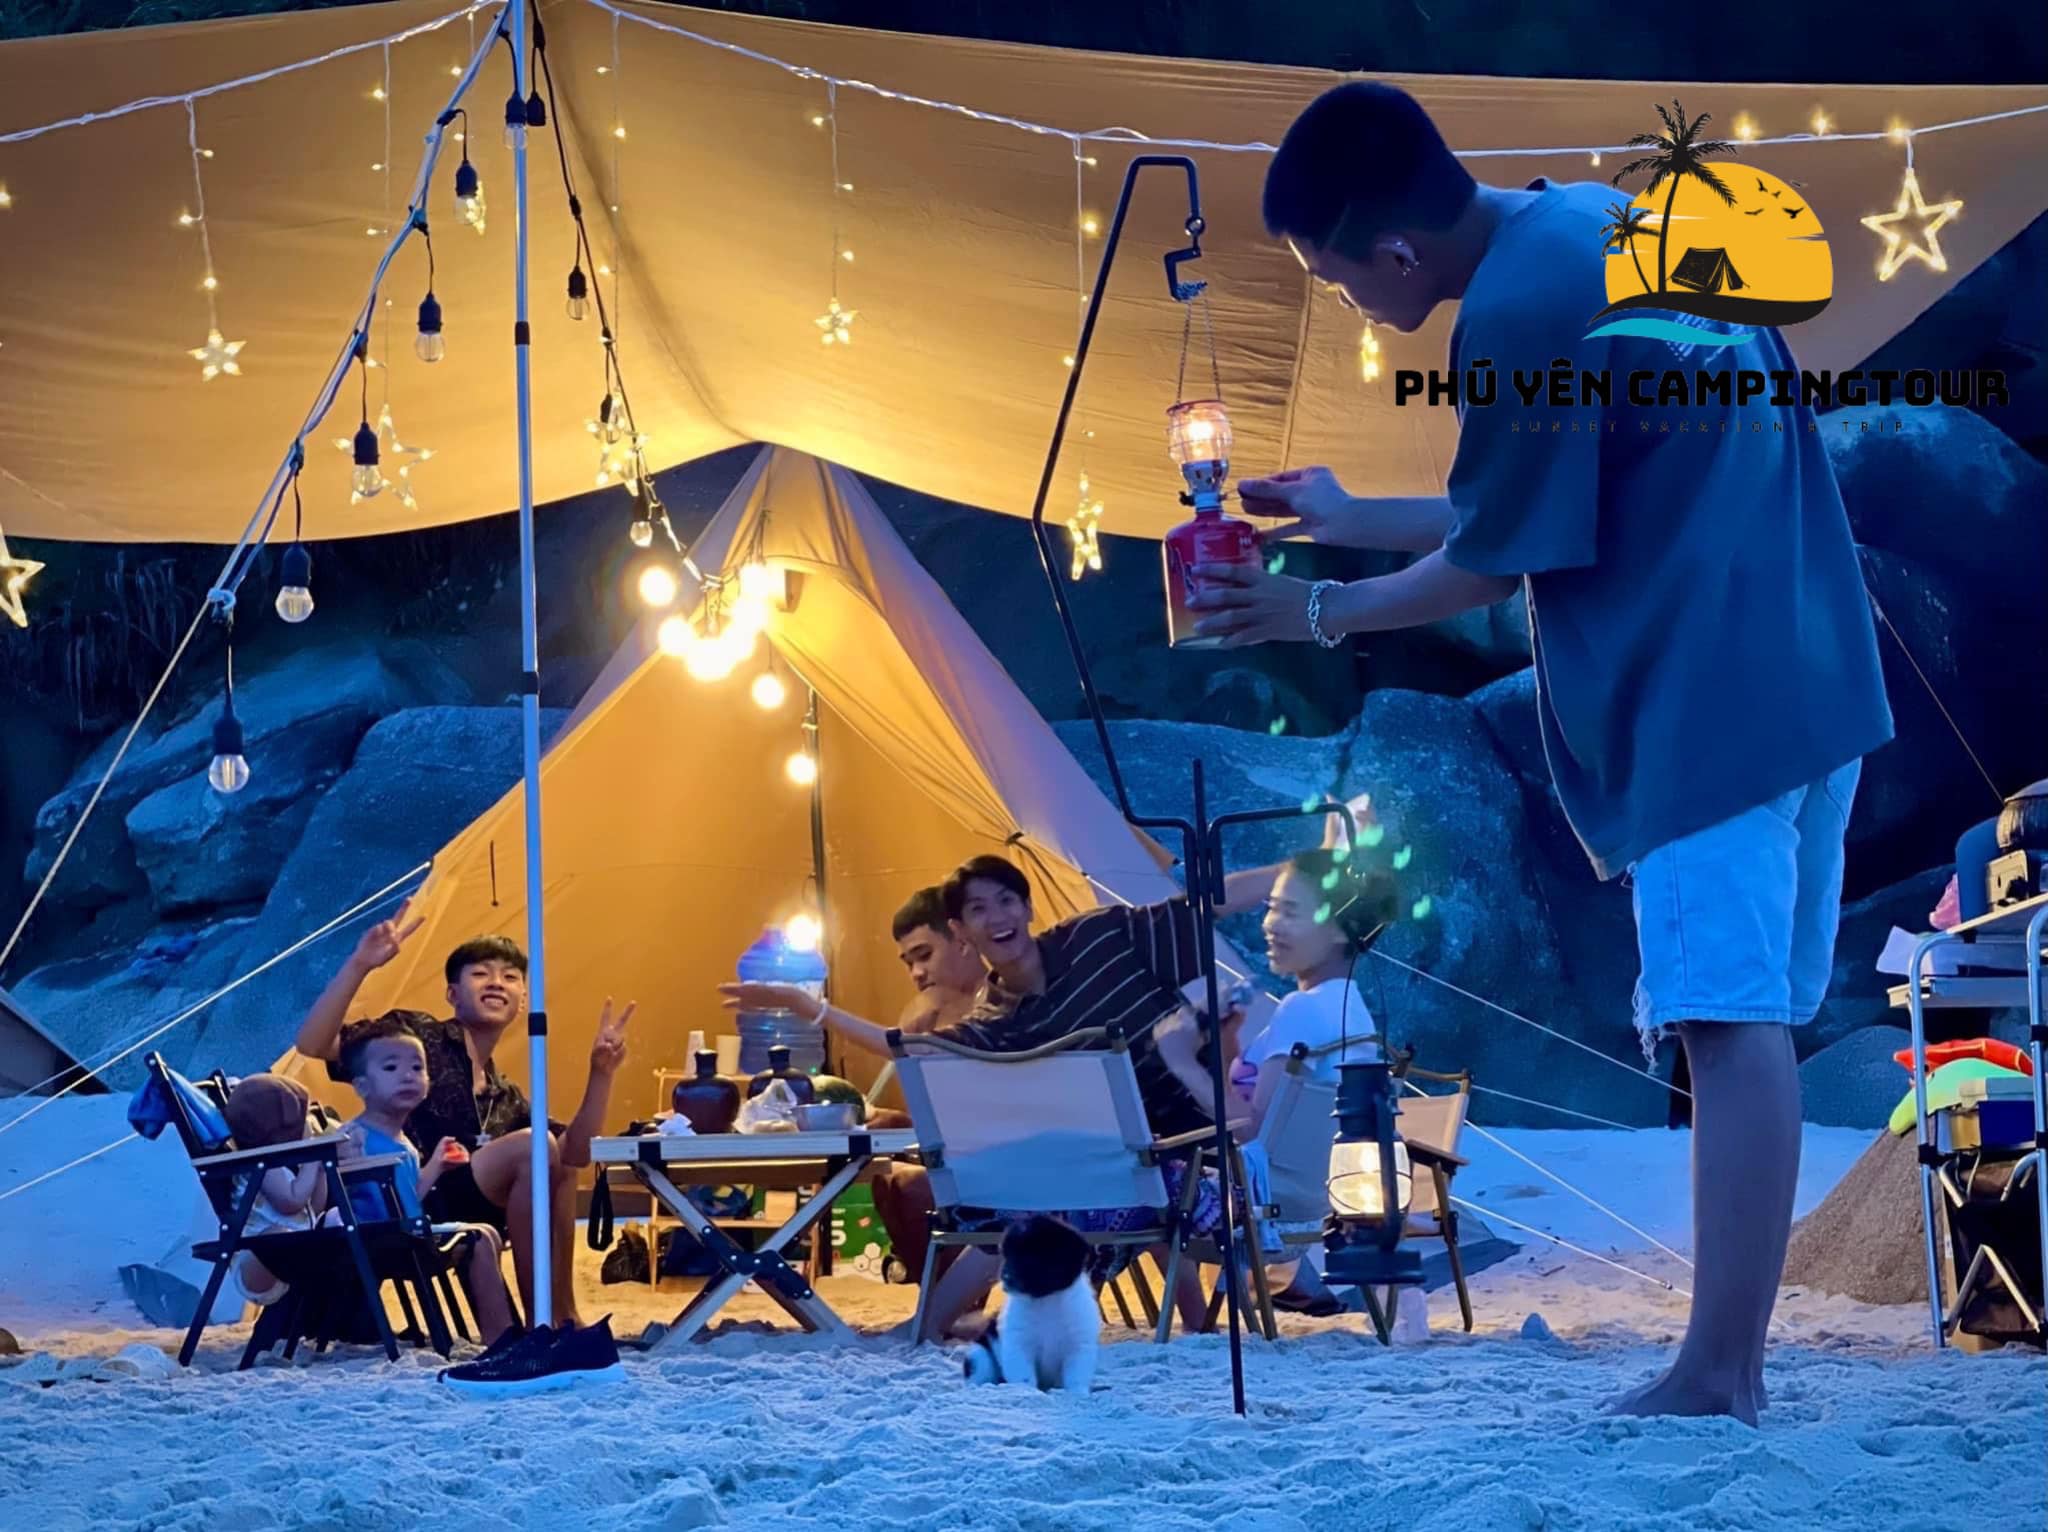 Phu Yen Camping Tour